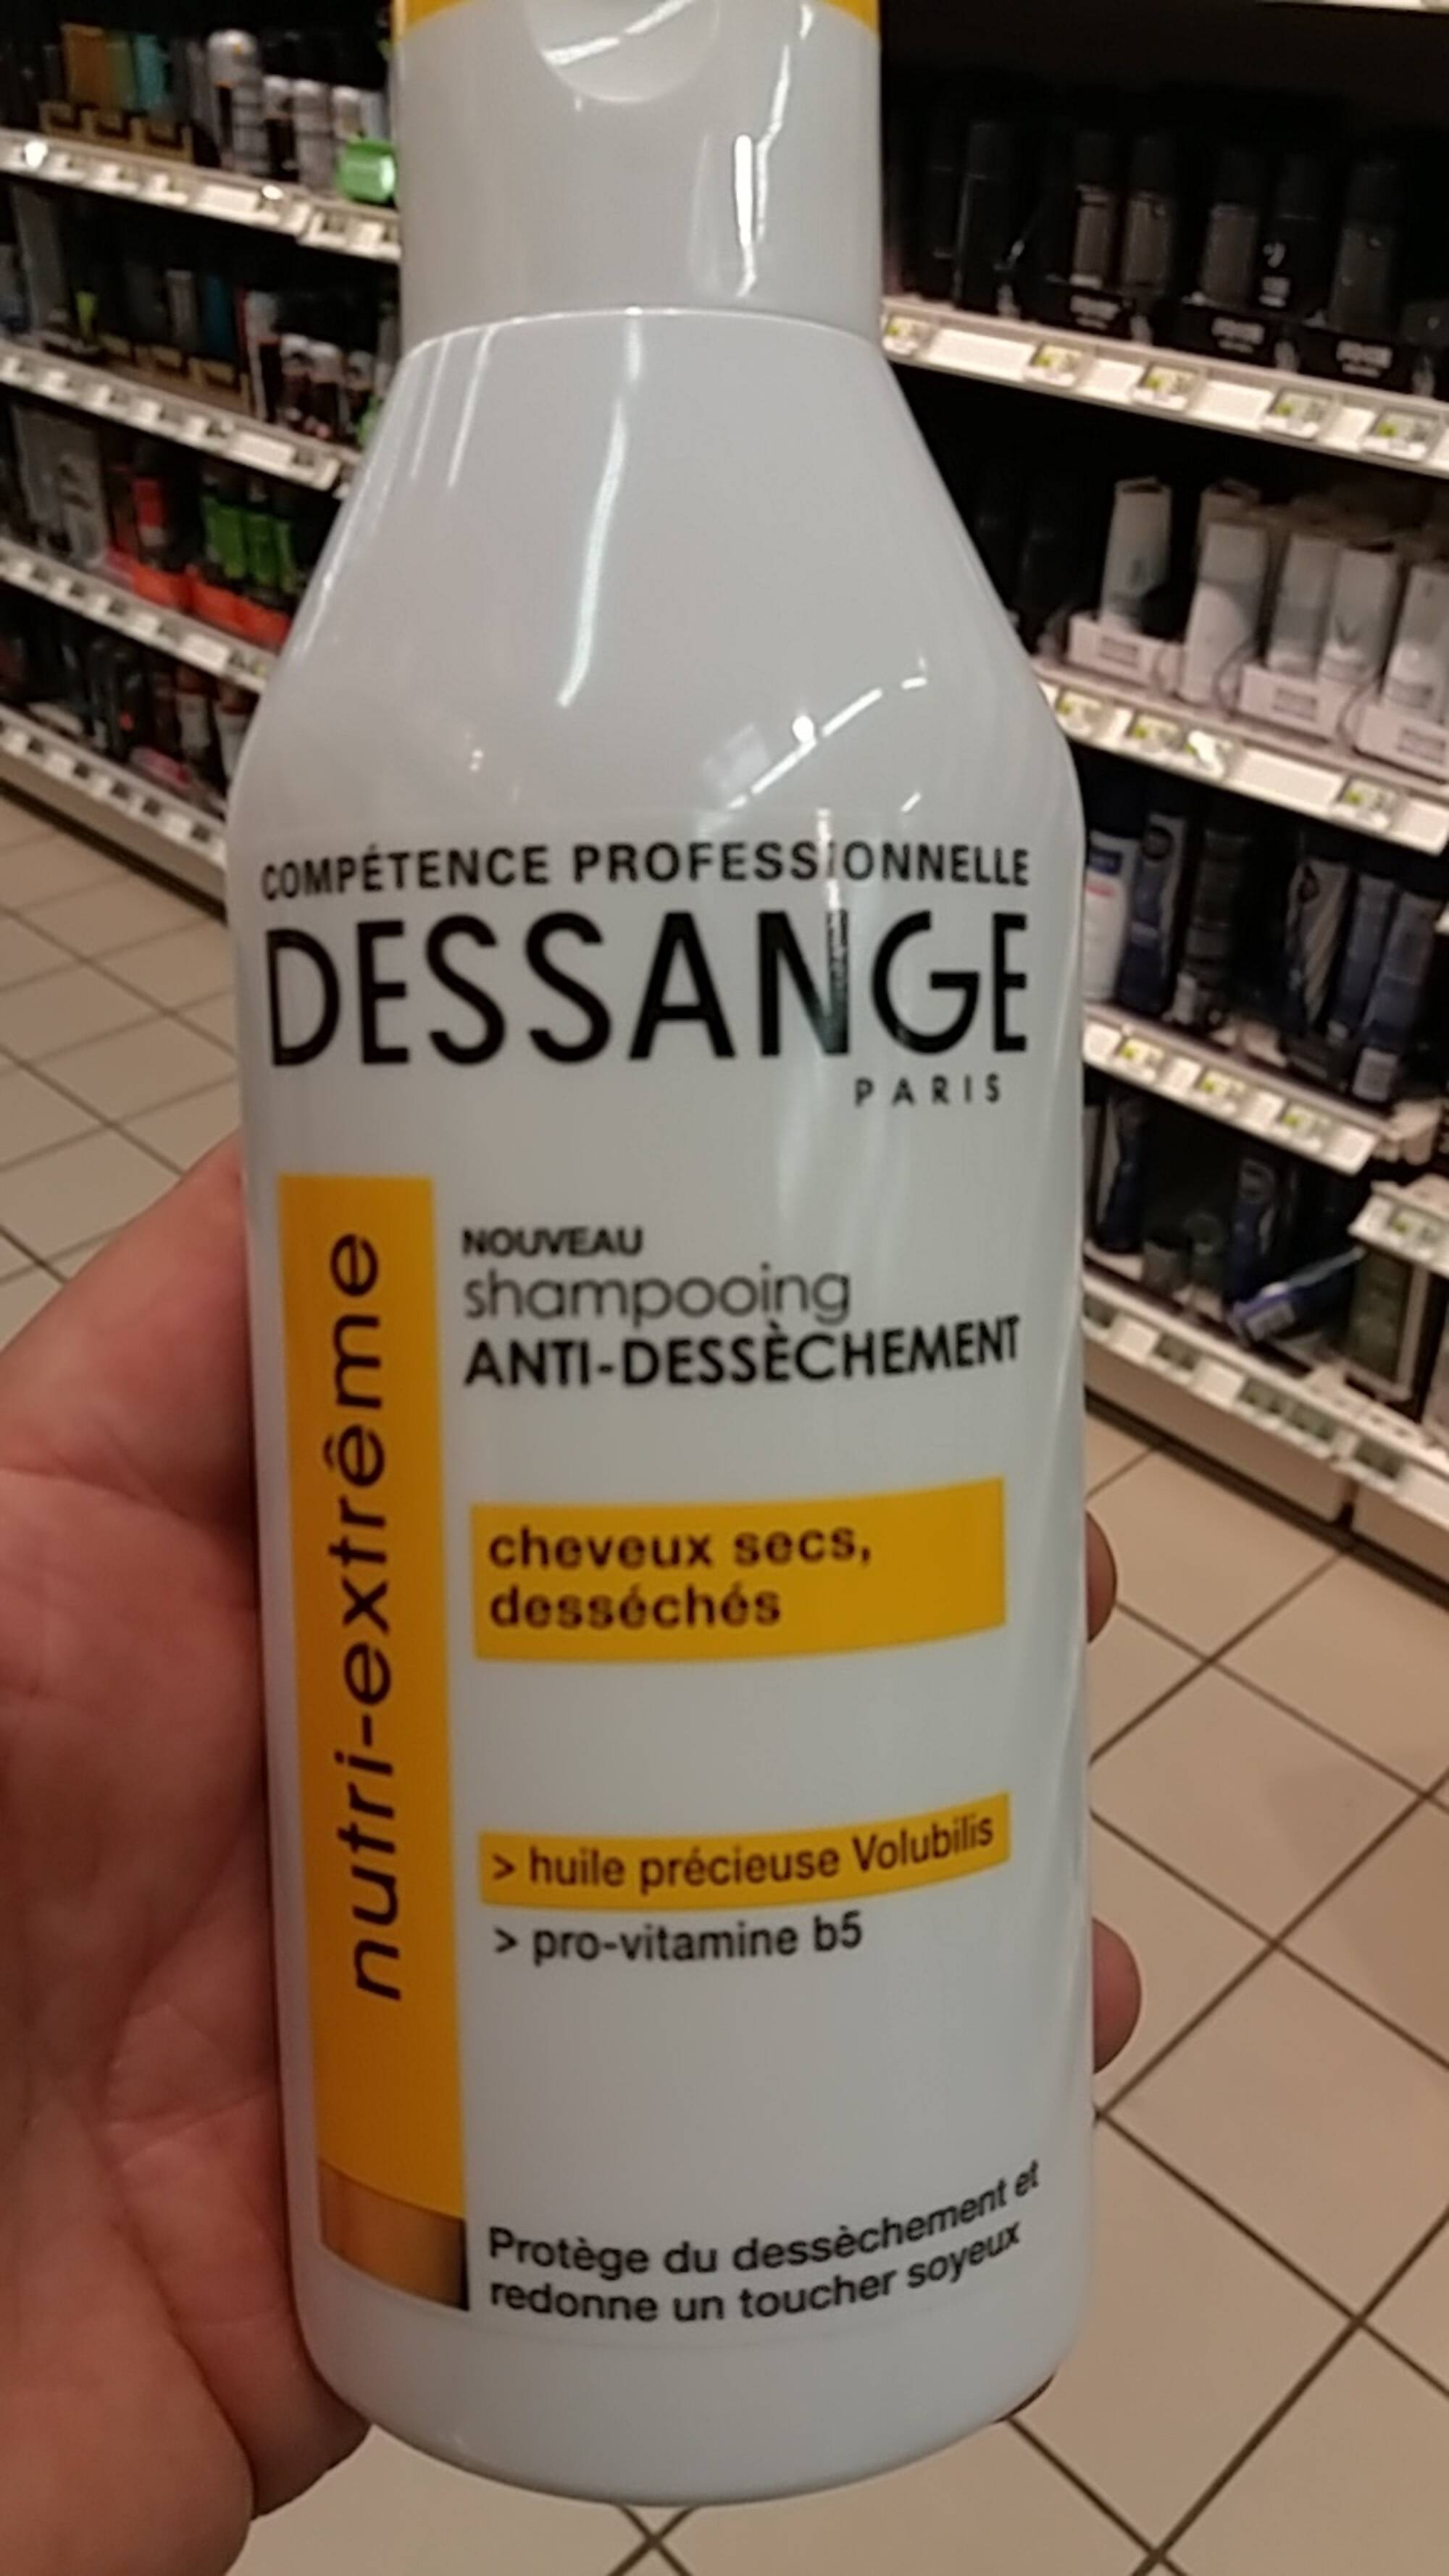 DESSANGE PARIS - Shampooing anti-dessèchement